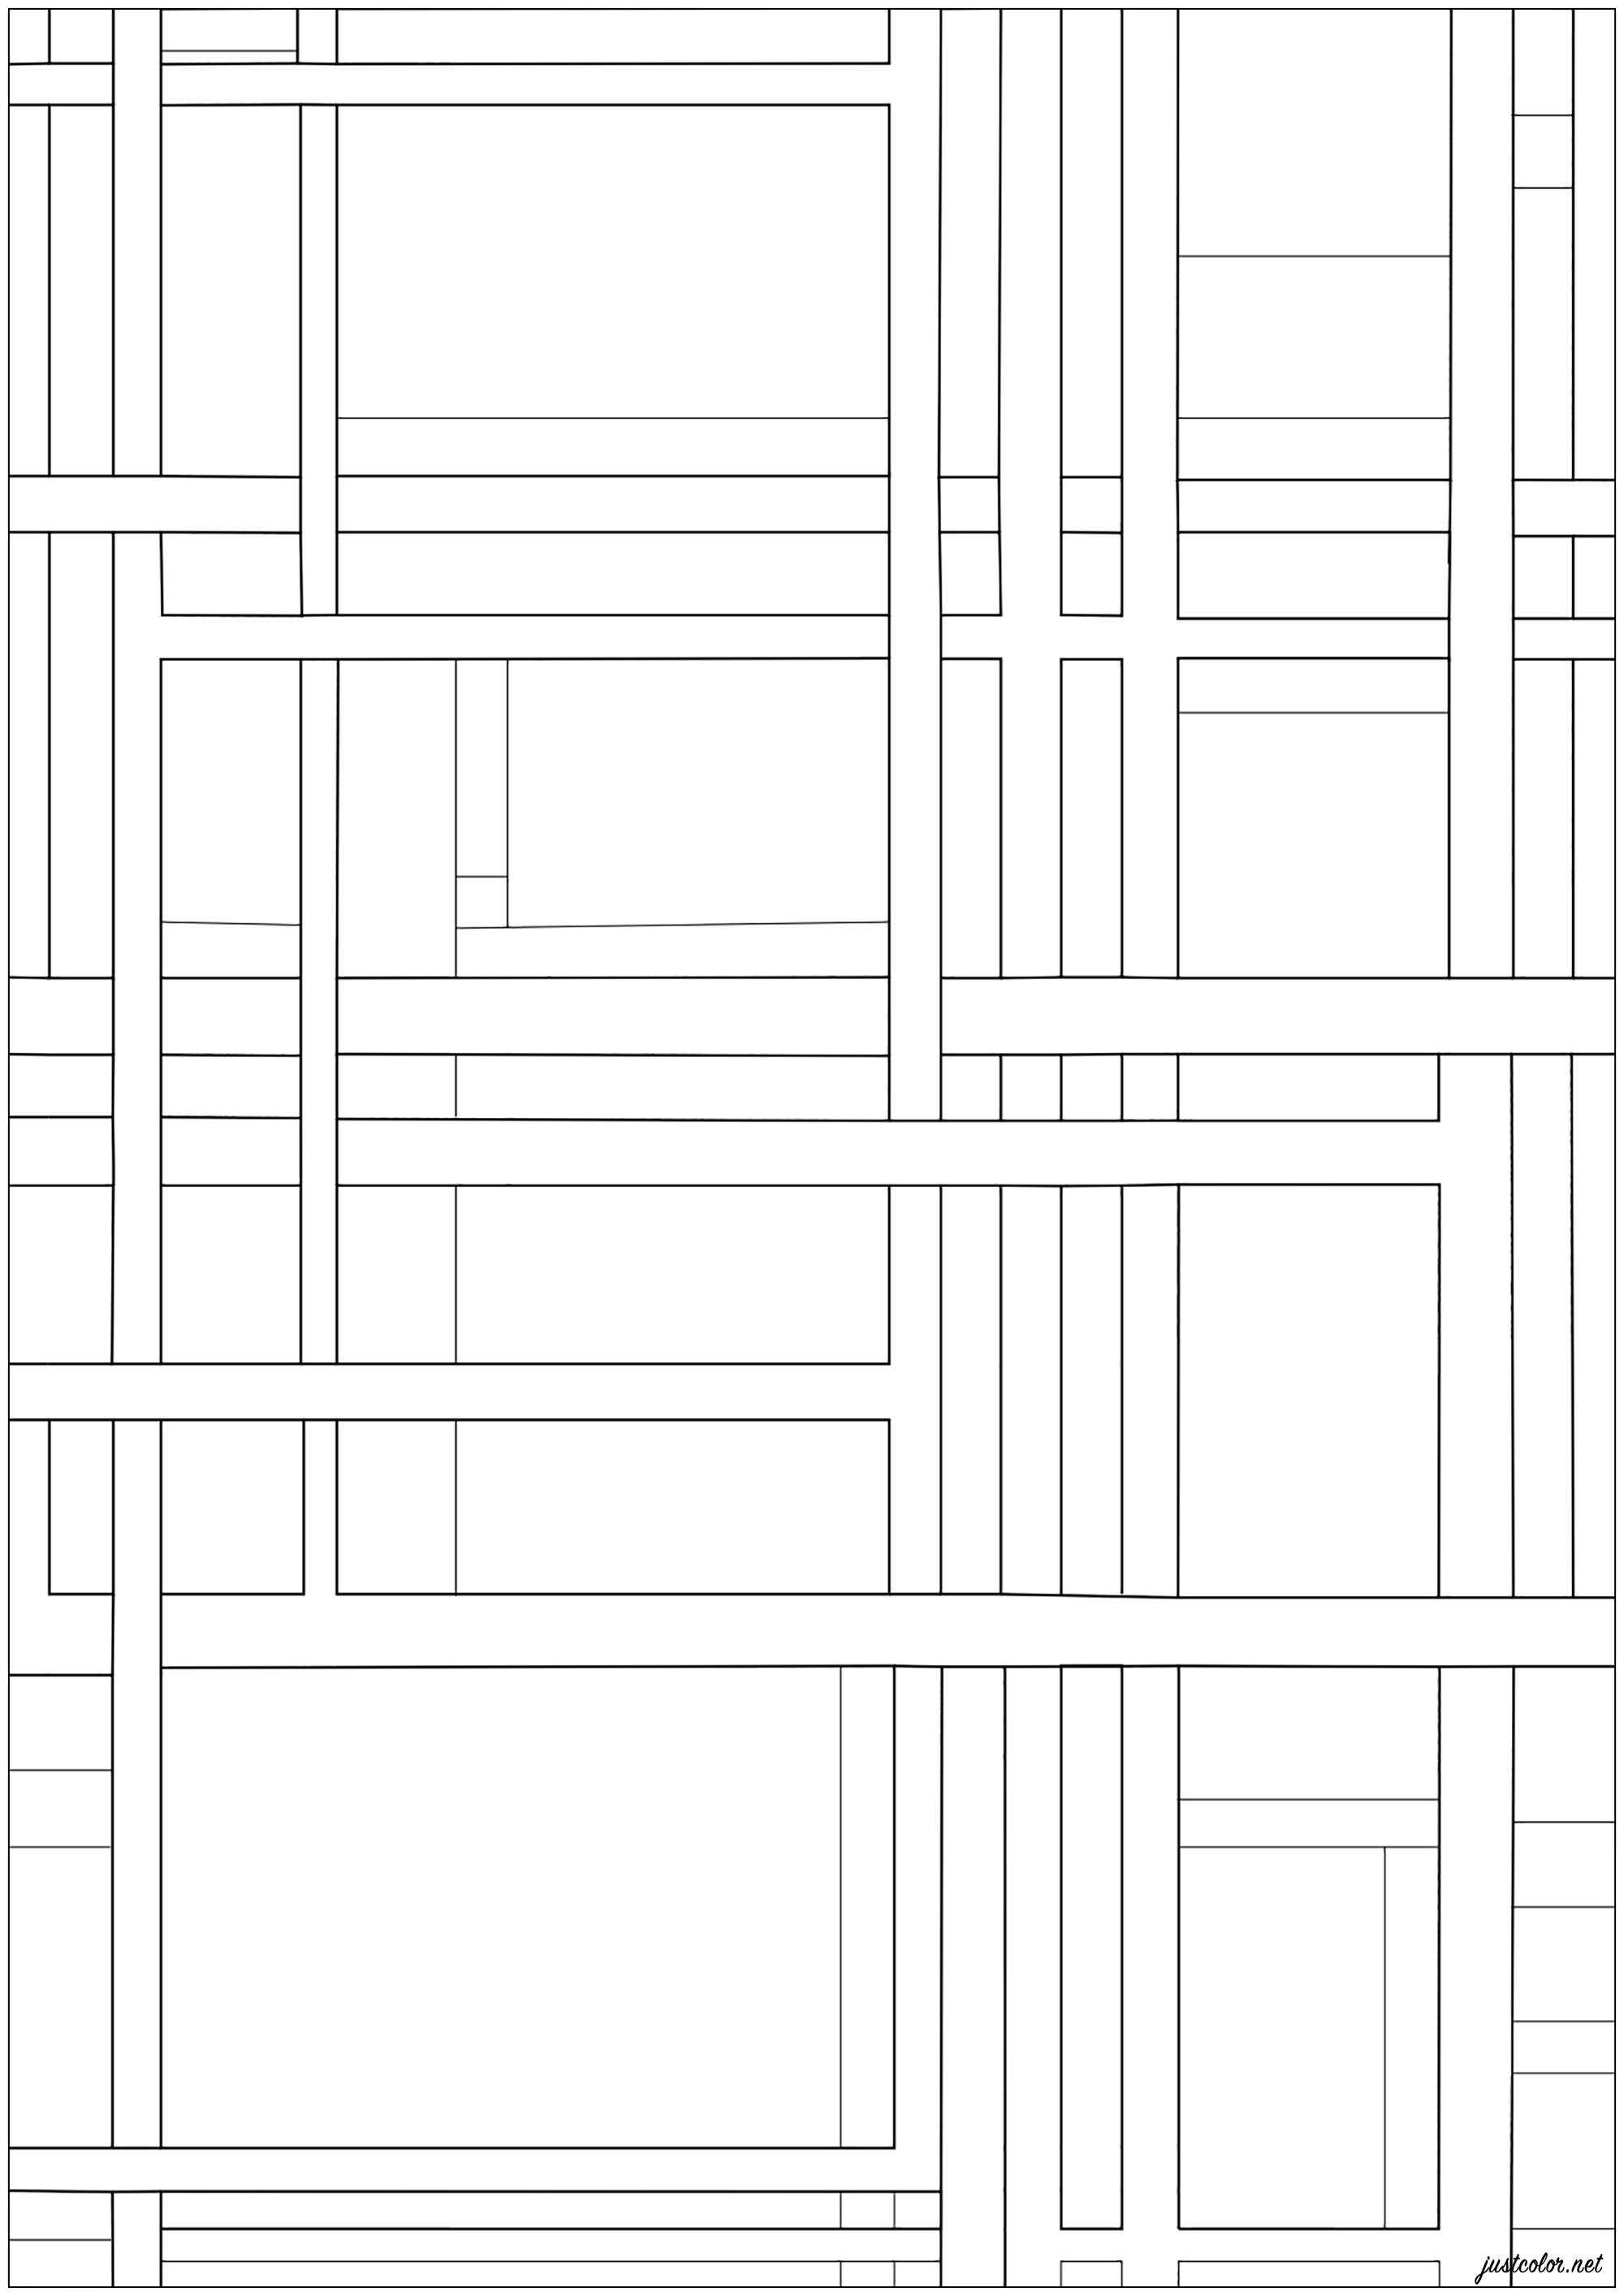 Pagina da colorare creata a partire dal dipinto 'City Rectangle' (1948) di Ilya Bolotowsky. L'ordinata composizione a griglia dei dipinti di questo artista è caratterizzata da linee in bianco e nero di varia larghezza e da aree rettangolari di colori primari non modulati. Come Mondrian, Bolotowsky si sforza di stabilire un equilibrio di orizzontali e verticali che sia allo stesso tempo armonioso e dinamico.